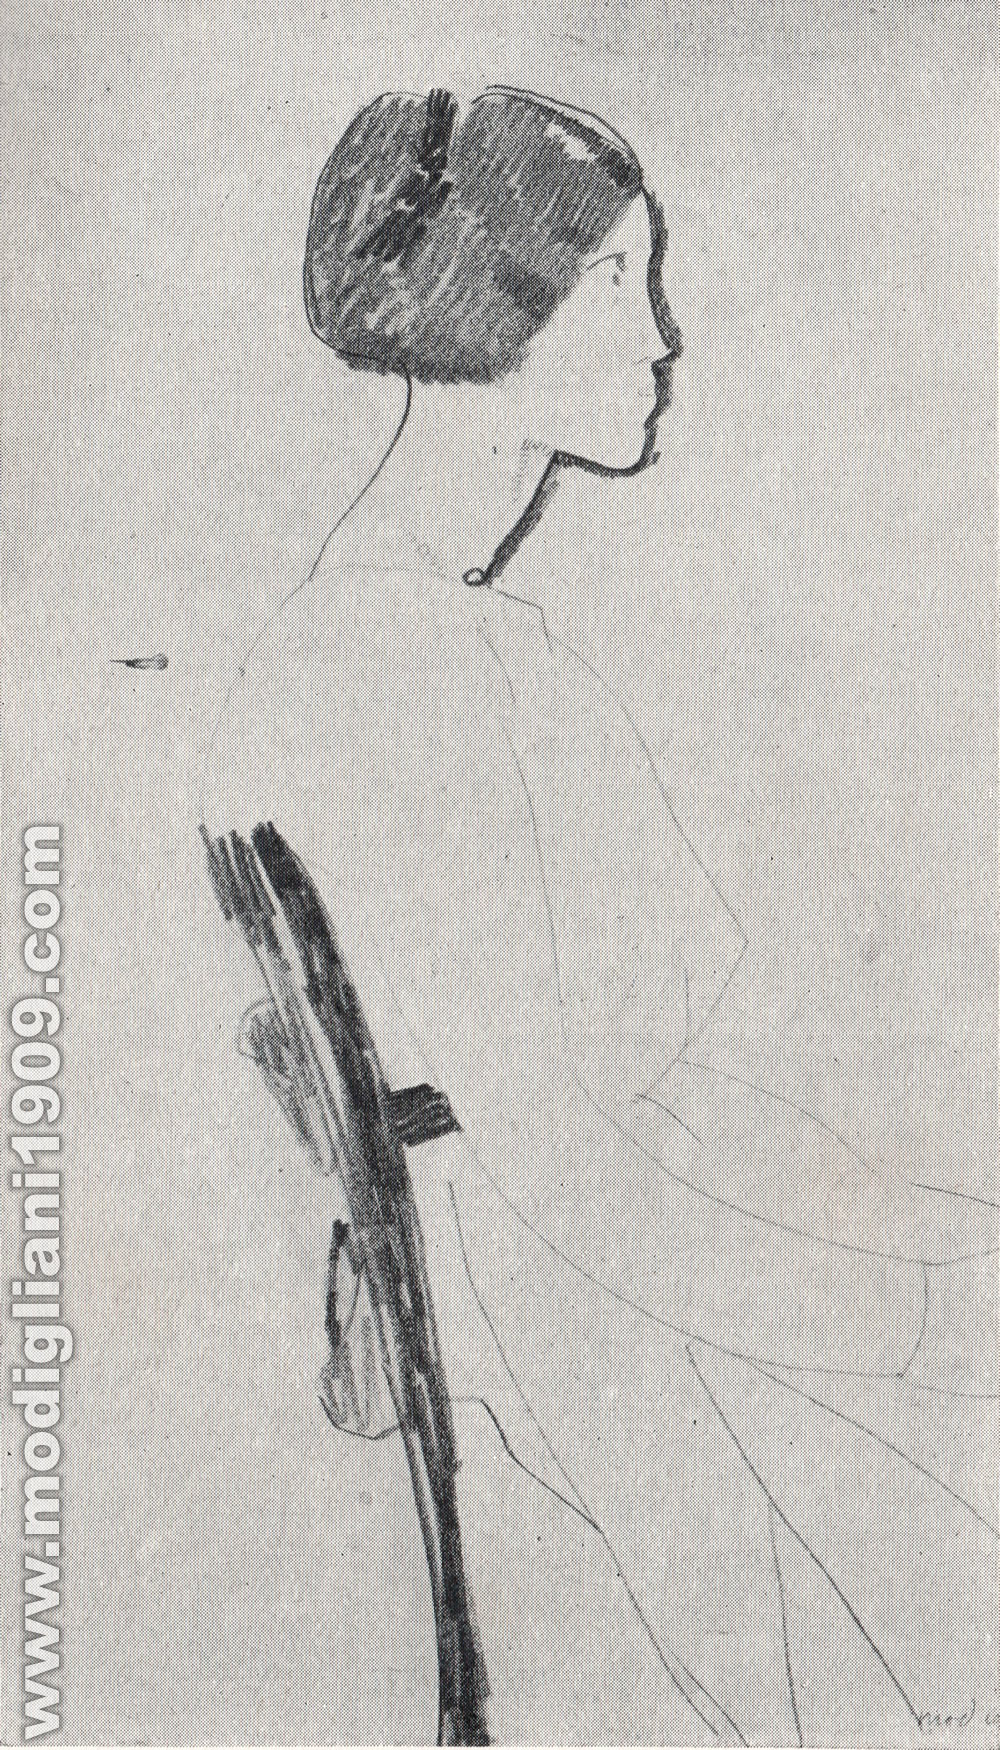 Amedeo Modigliani - Giovane - 1917 - Parigi. Collezione Zborowski